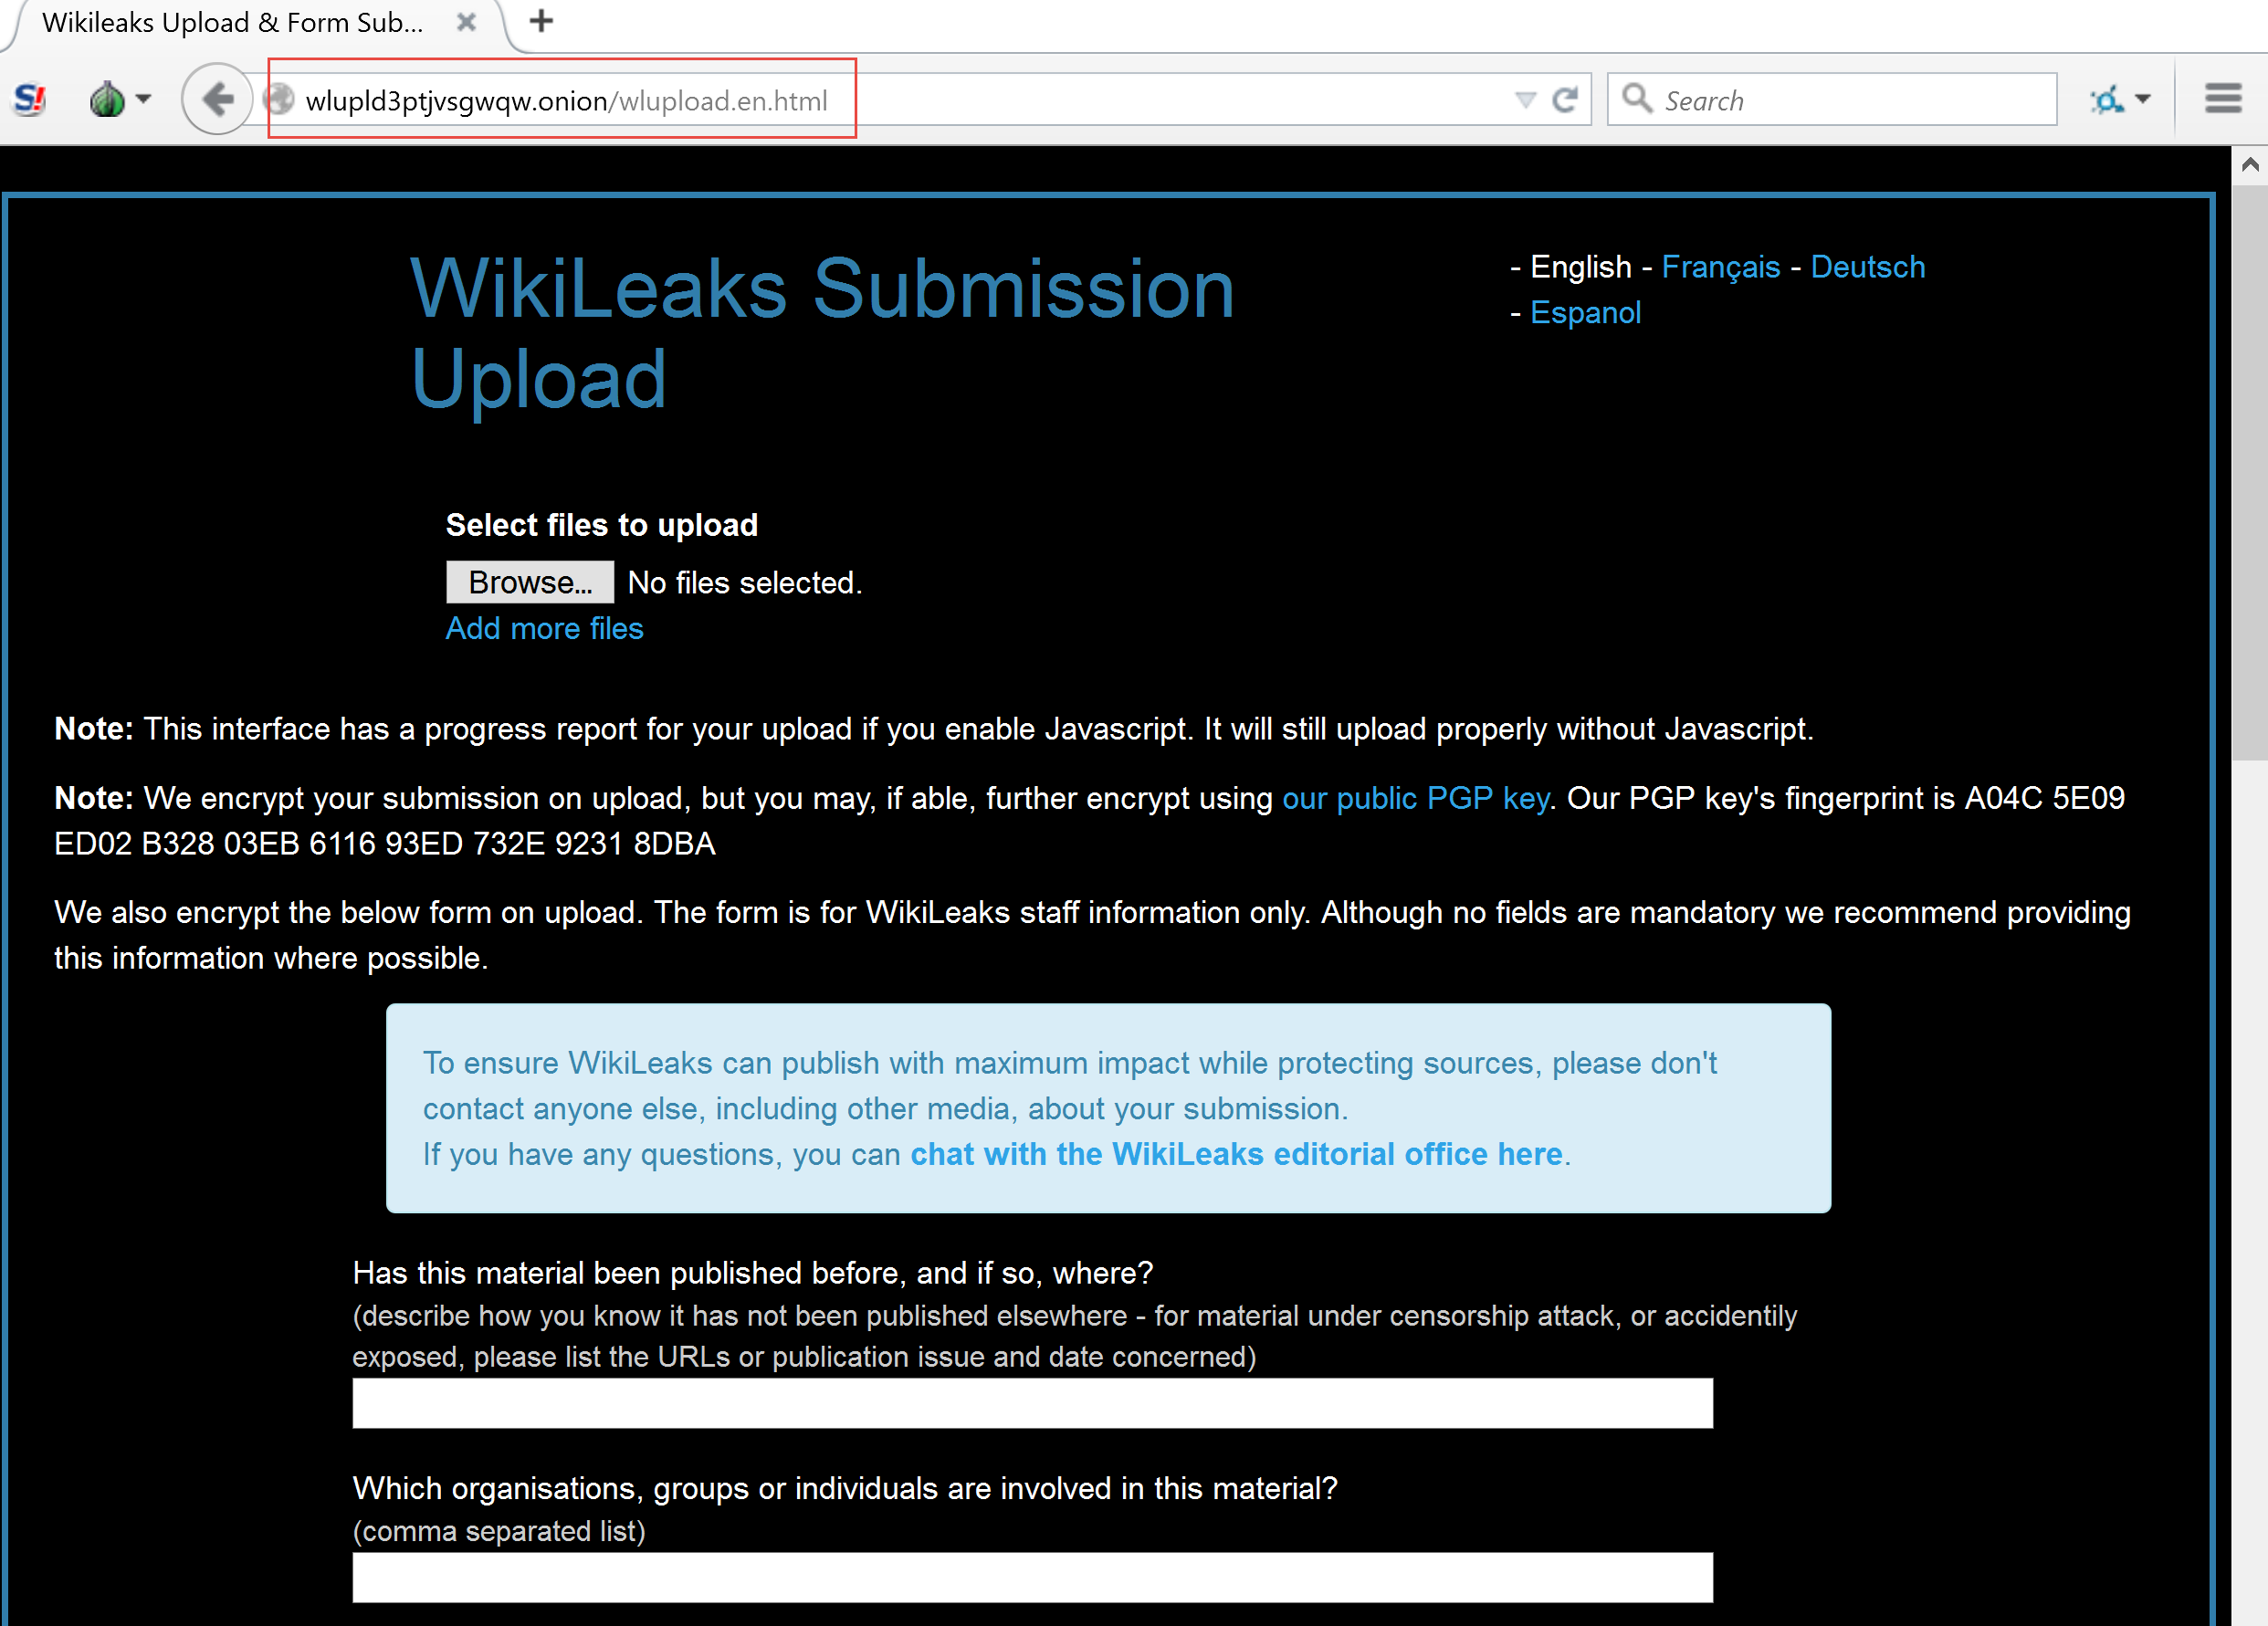 WikiLeaks drop page